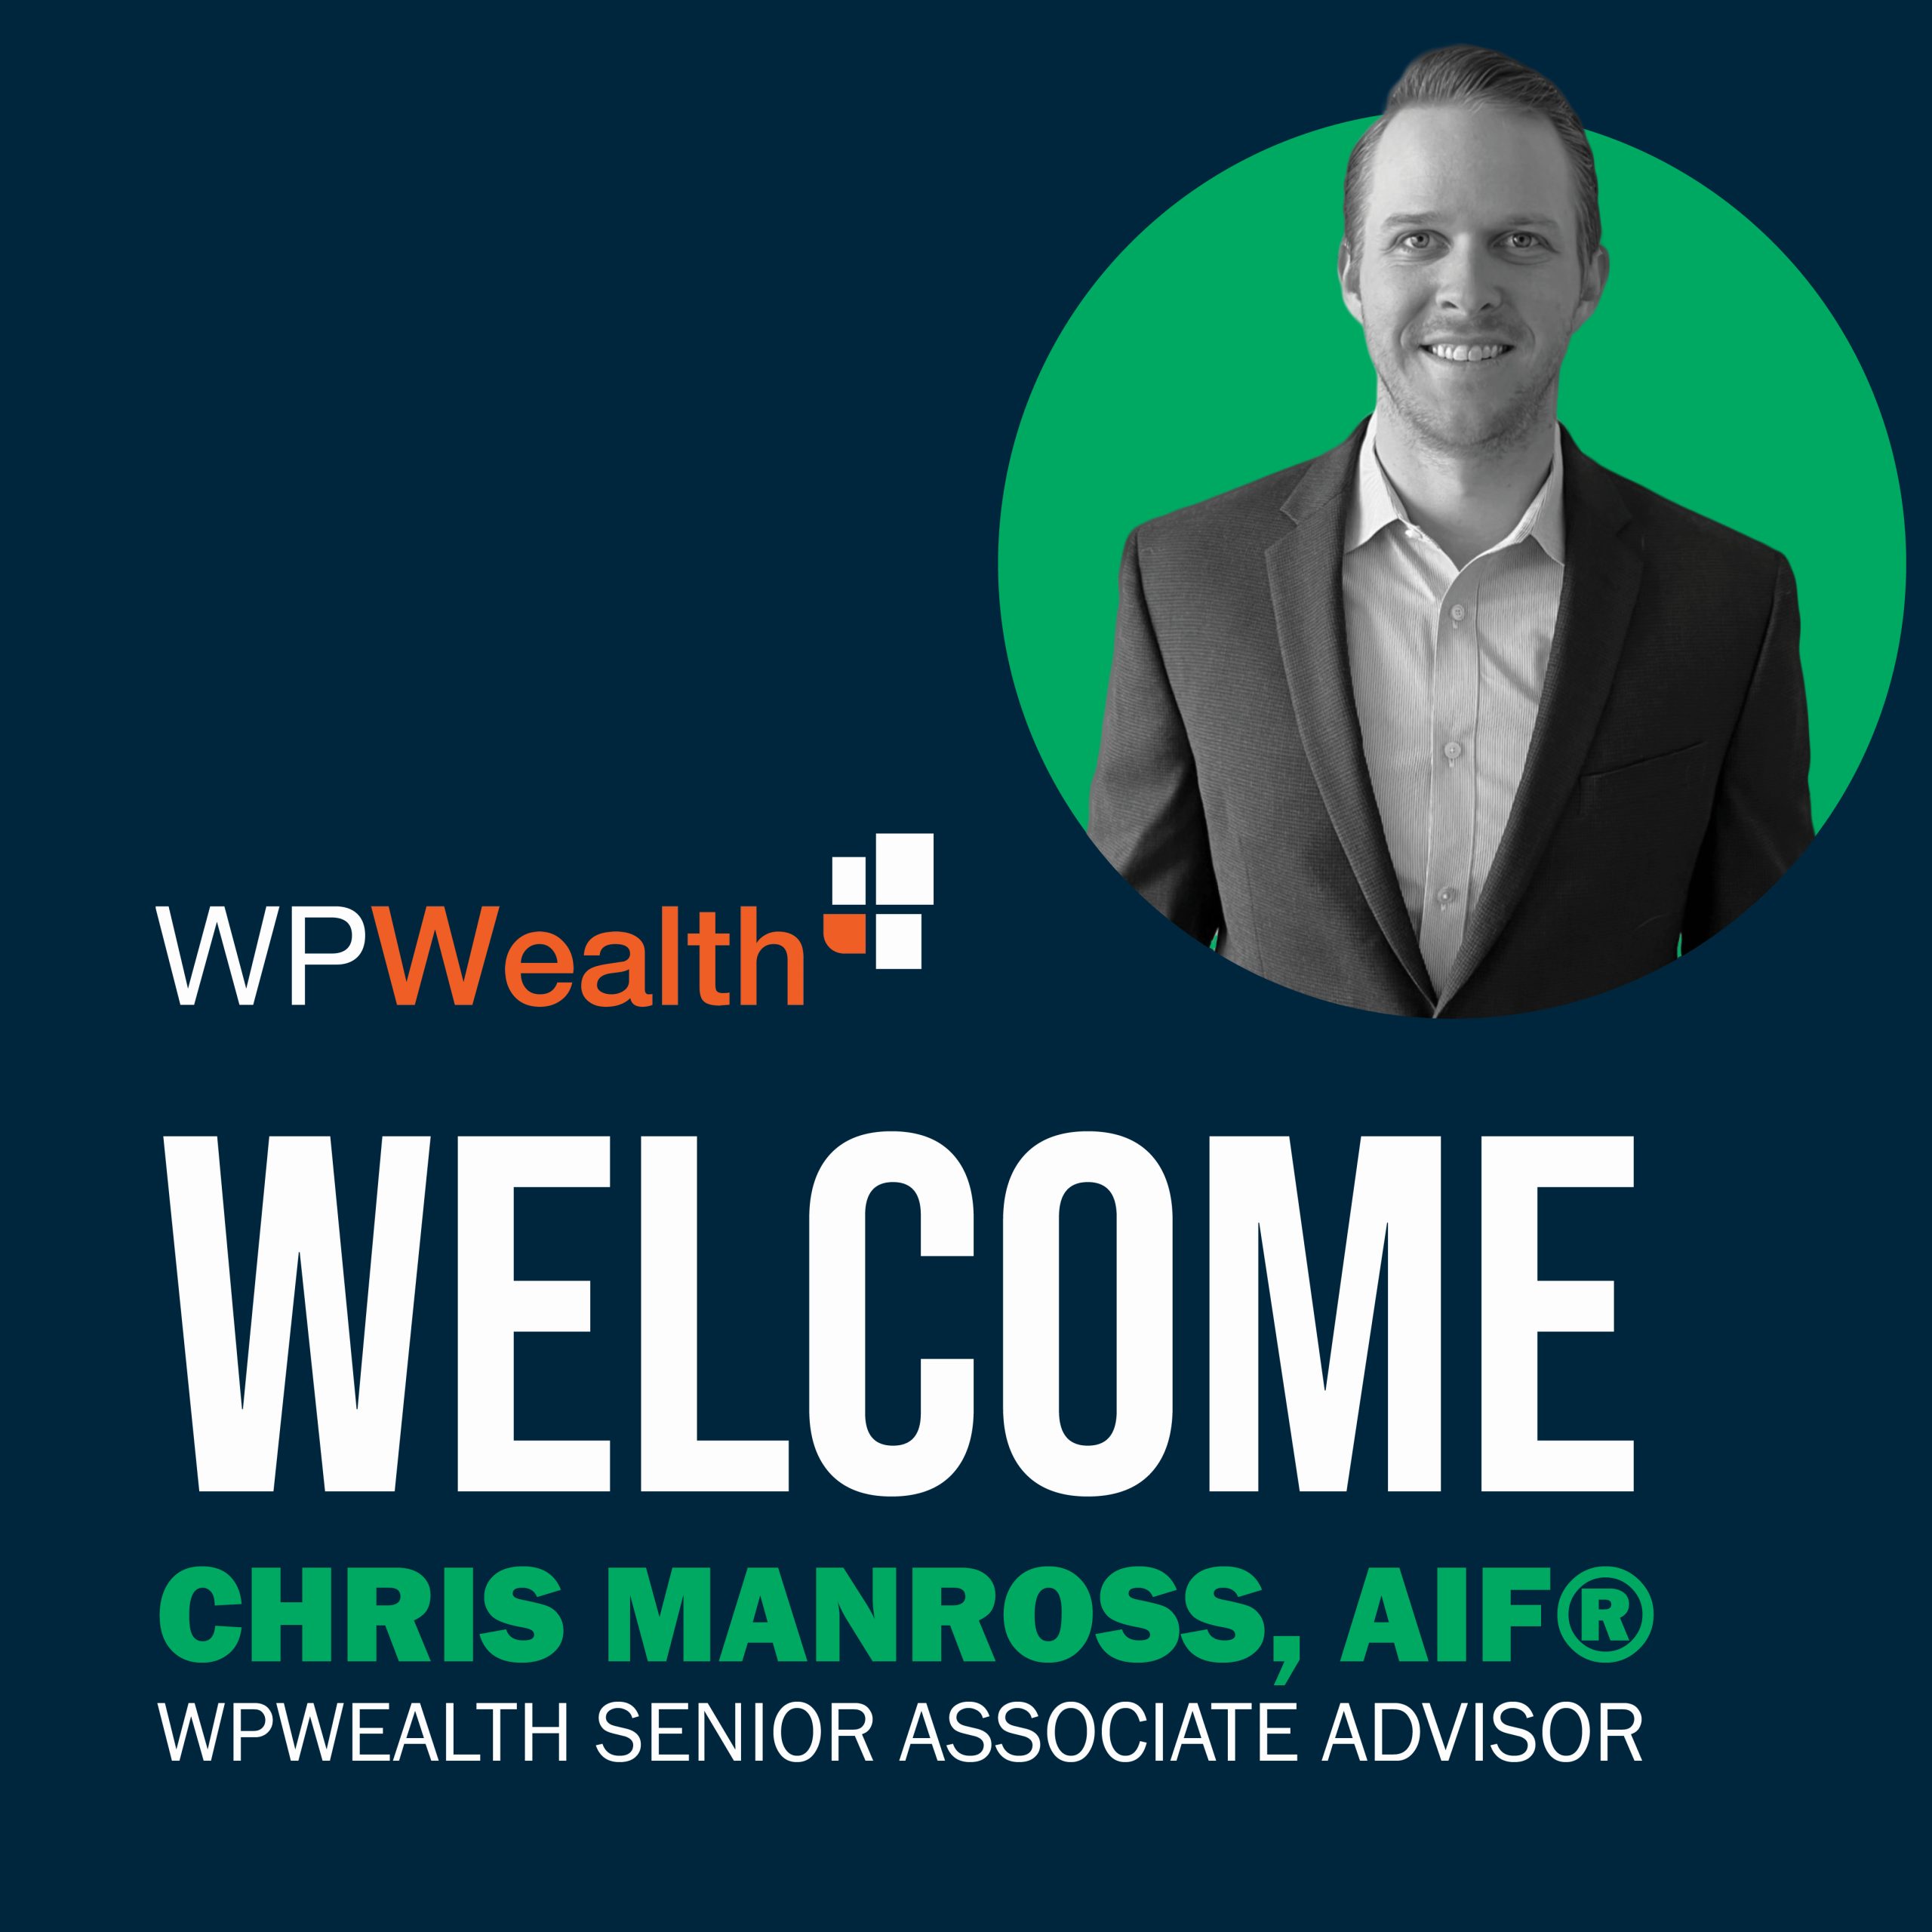 Chris Manross joins WPWealth